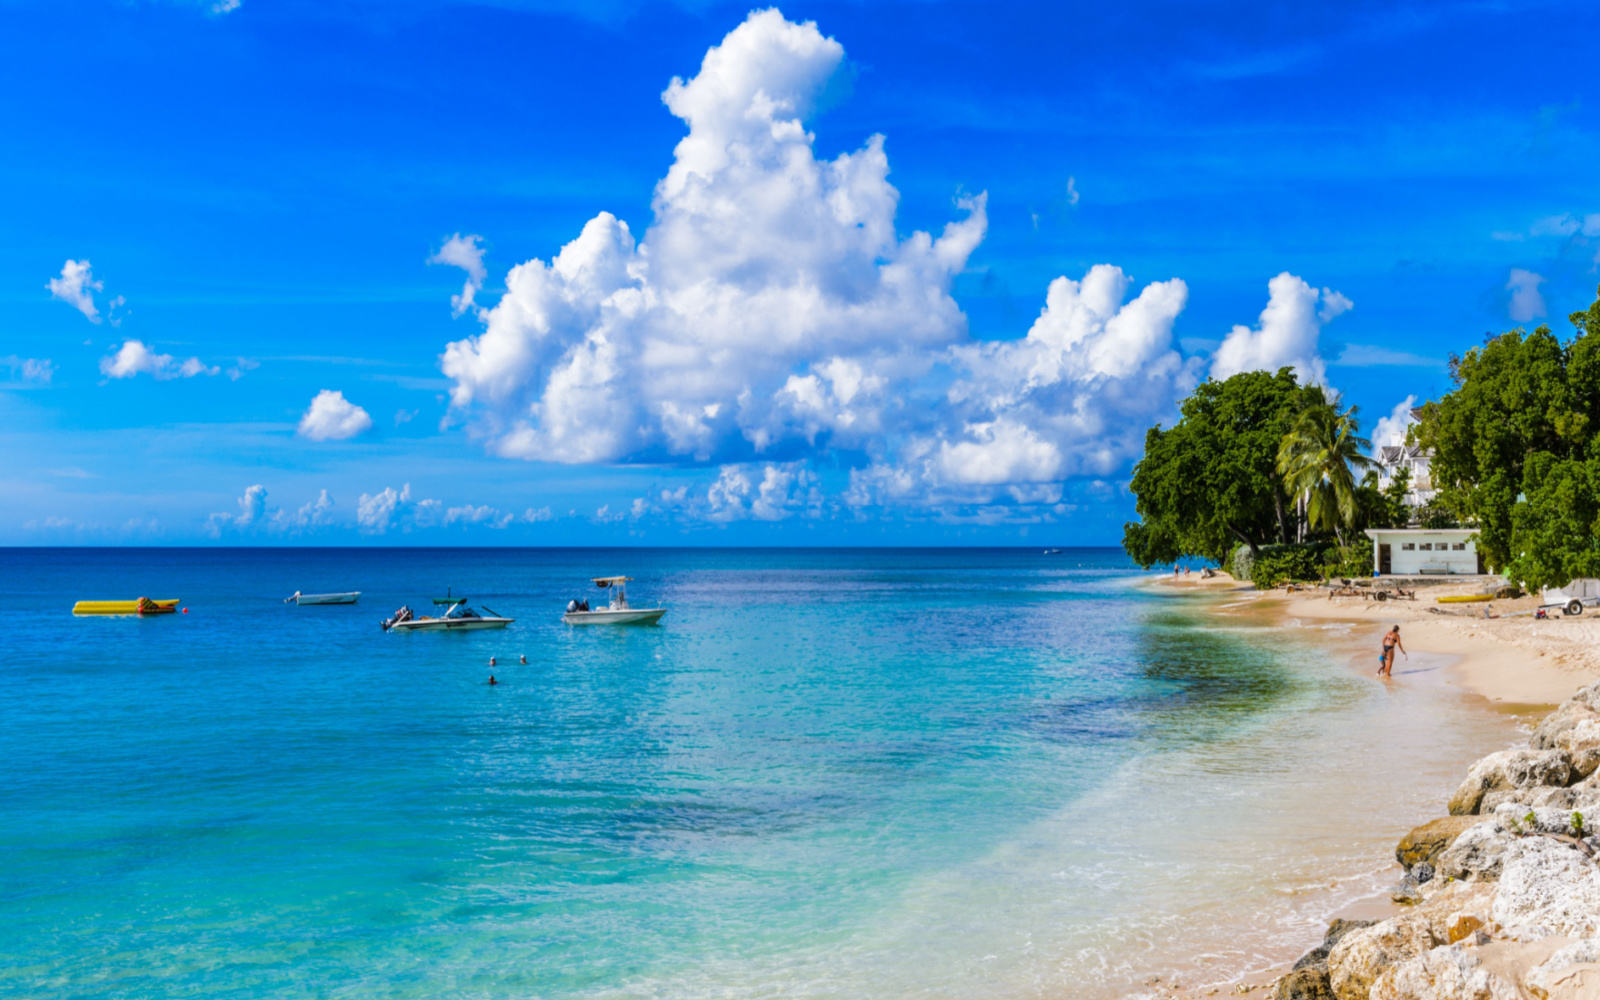 Is Barbados Safe? | Travel Tips & Safety Concerns